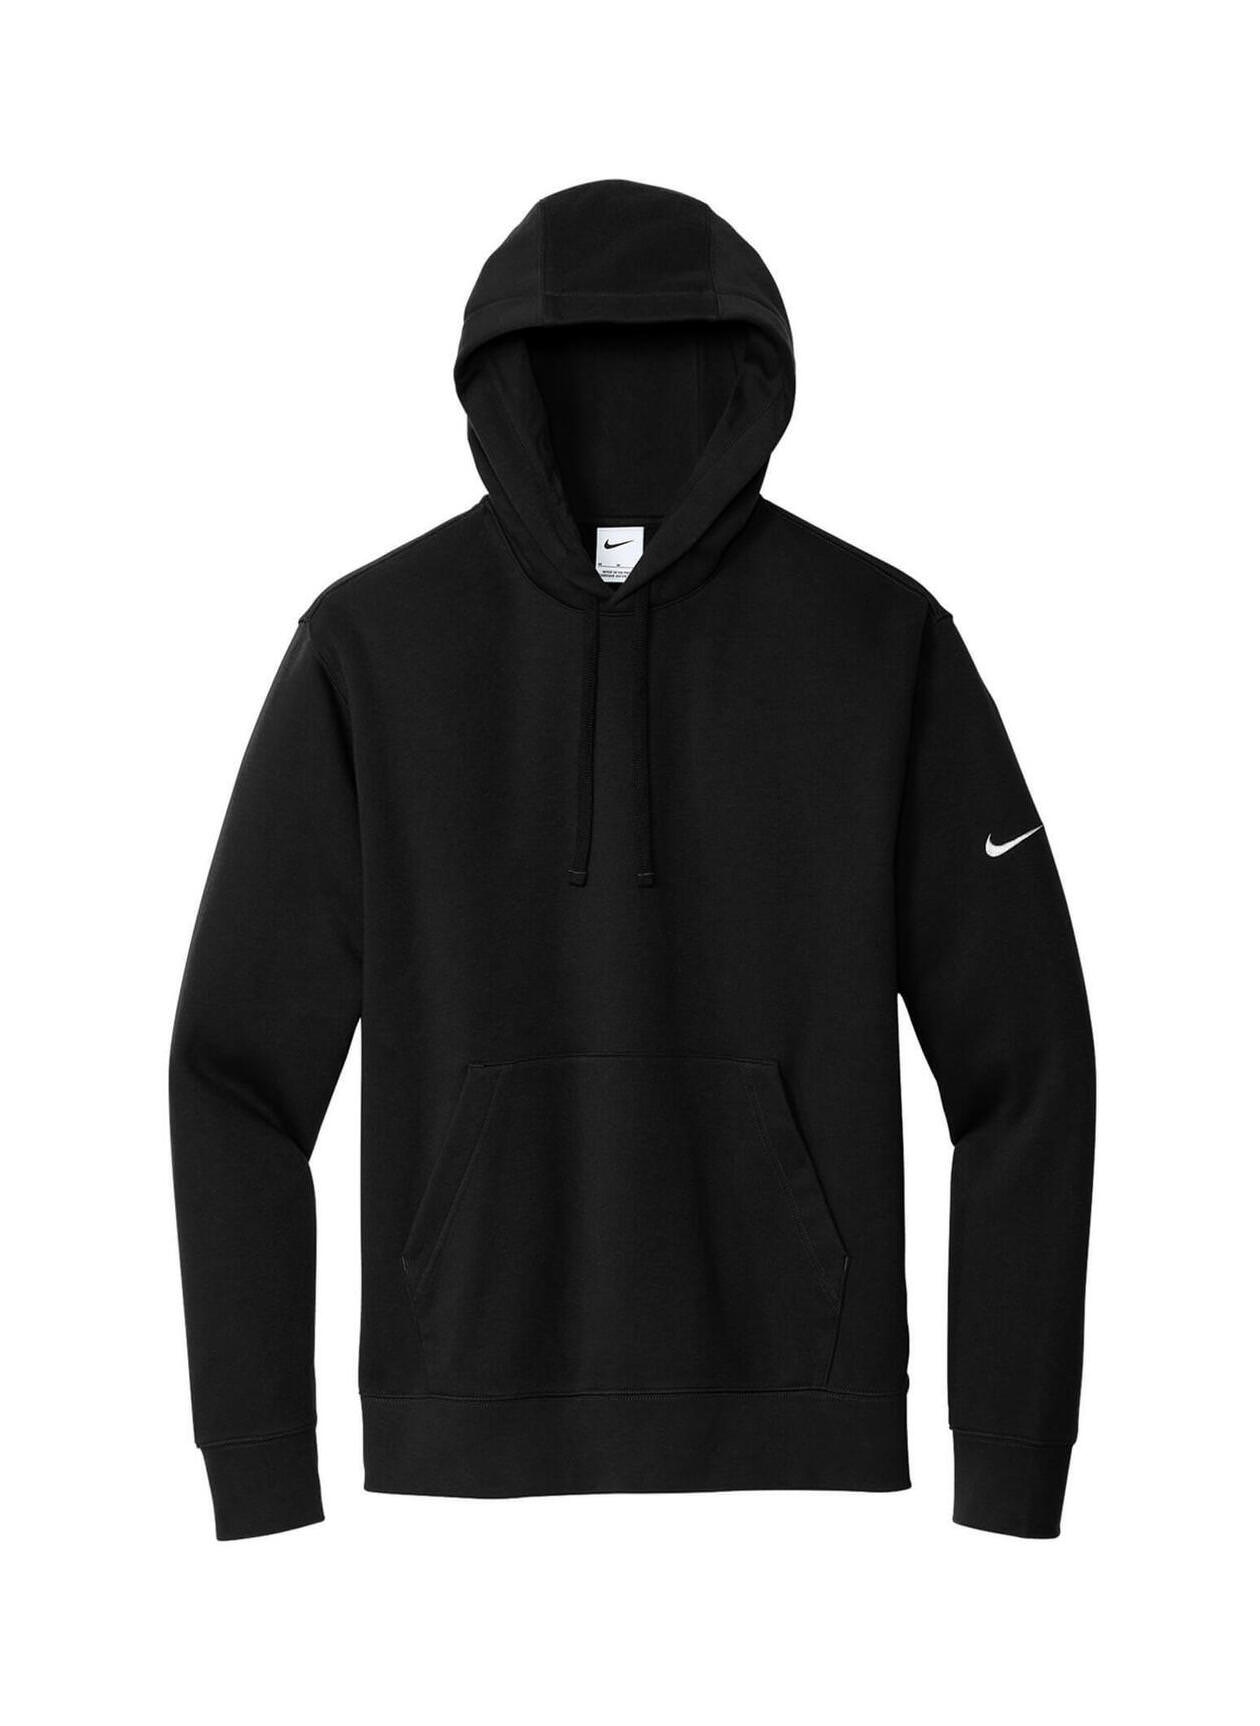 Custom Hoodies  Printed Nike Men's Black Club Fleece Sleeve Swoosh  Pullover Hoodie